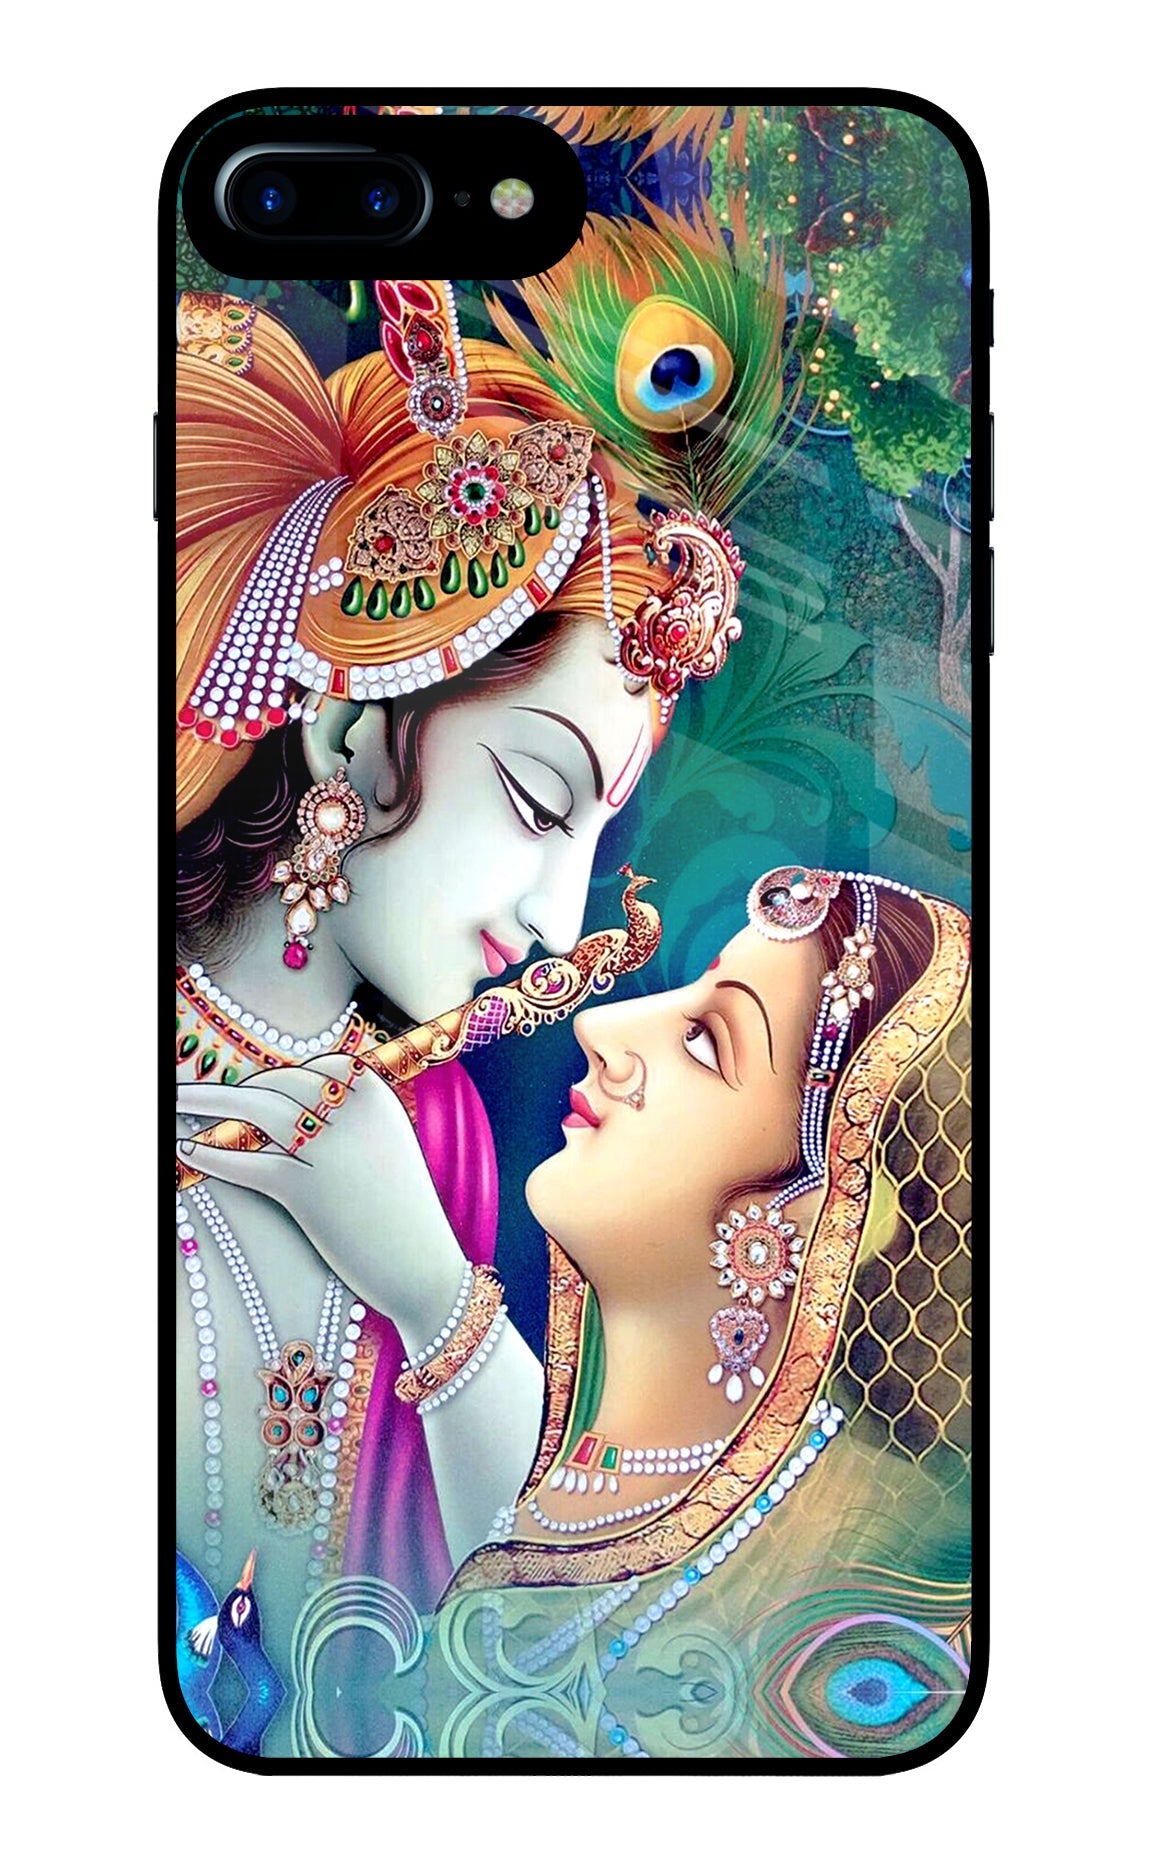 Lord Radha Krishna iPhone 8 Plus Glass Case